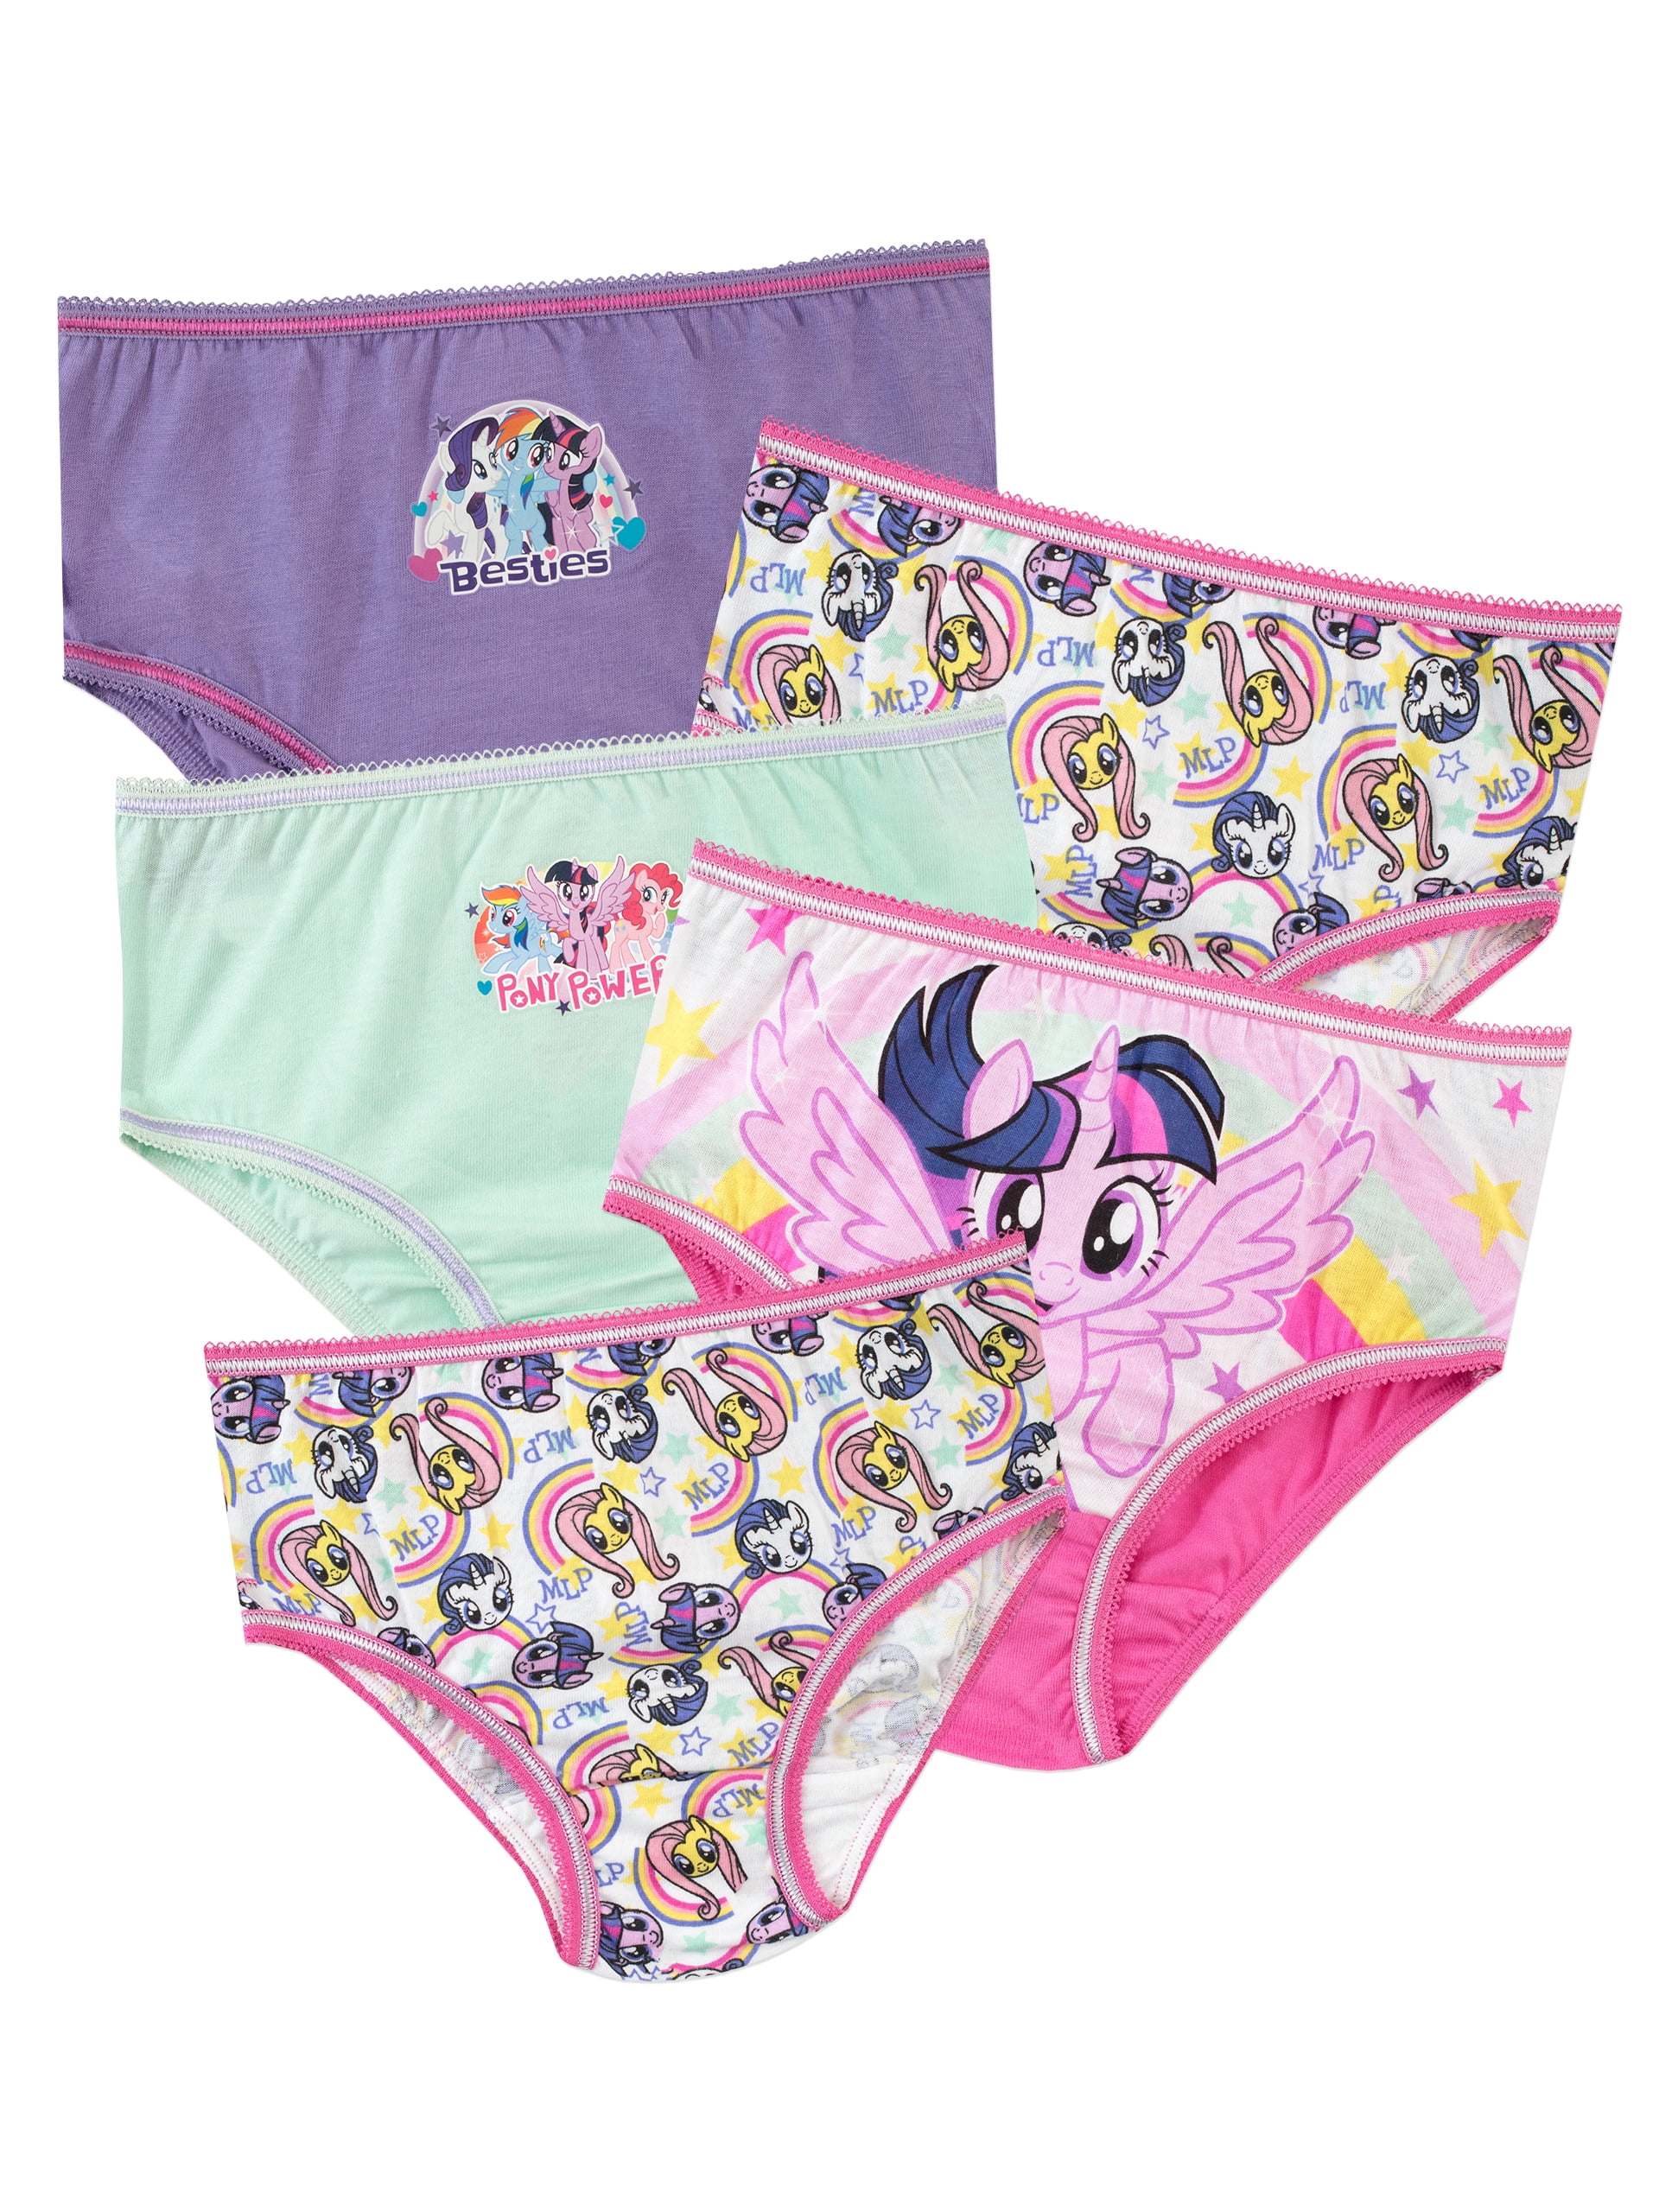 My Little Pony Girls Underwear 5 Pack Sizes 2T-8